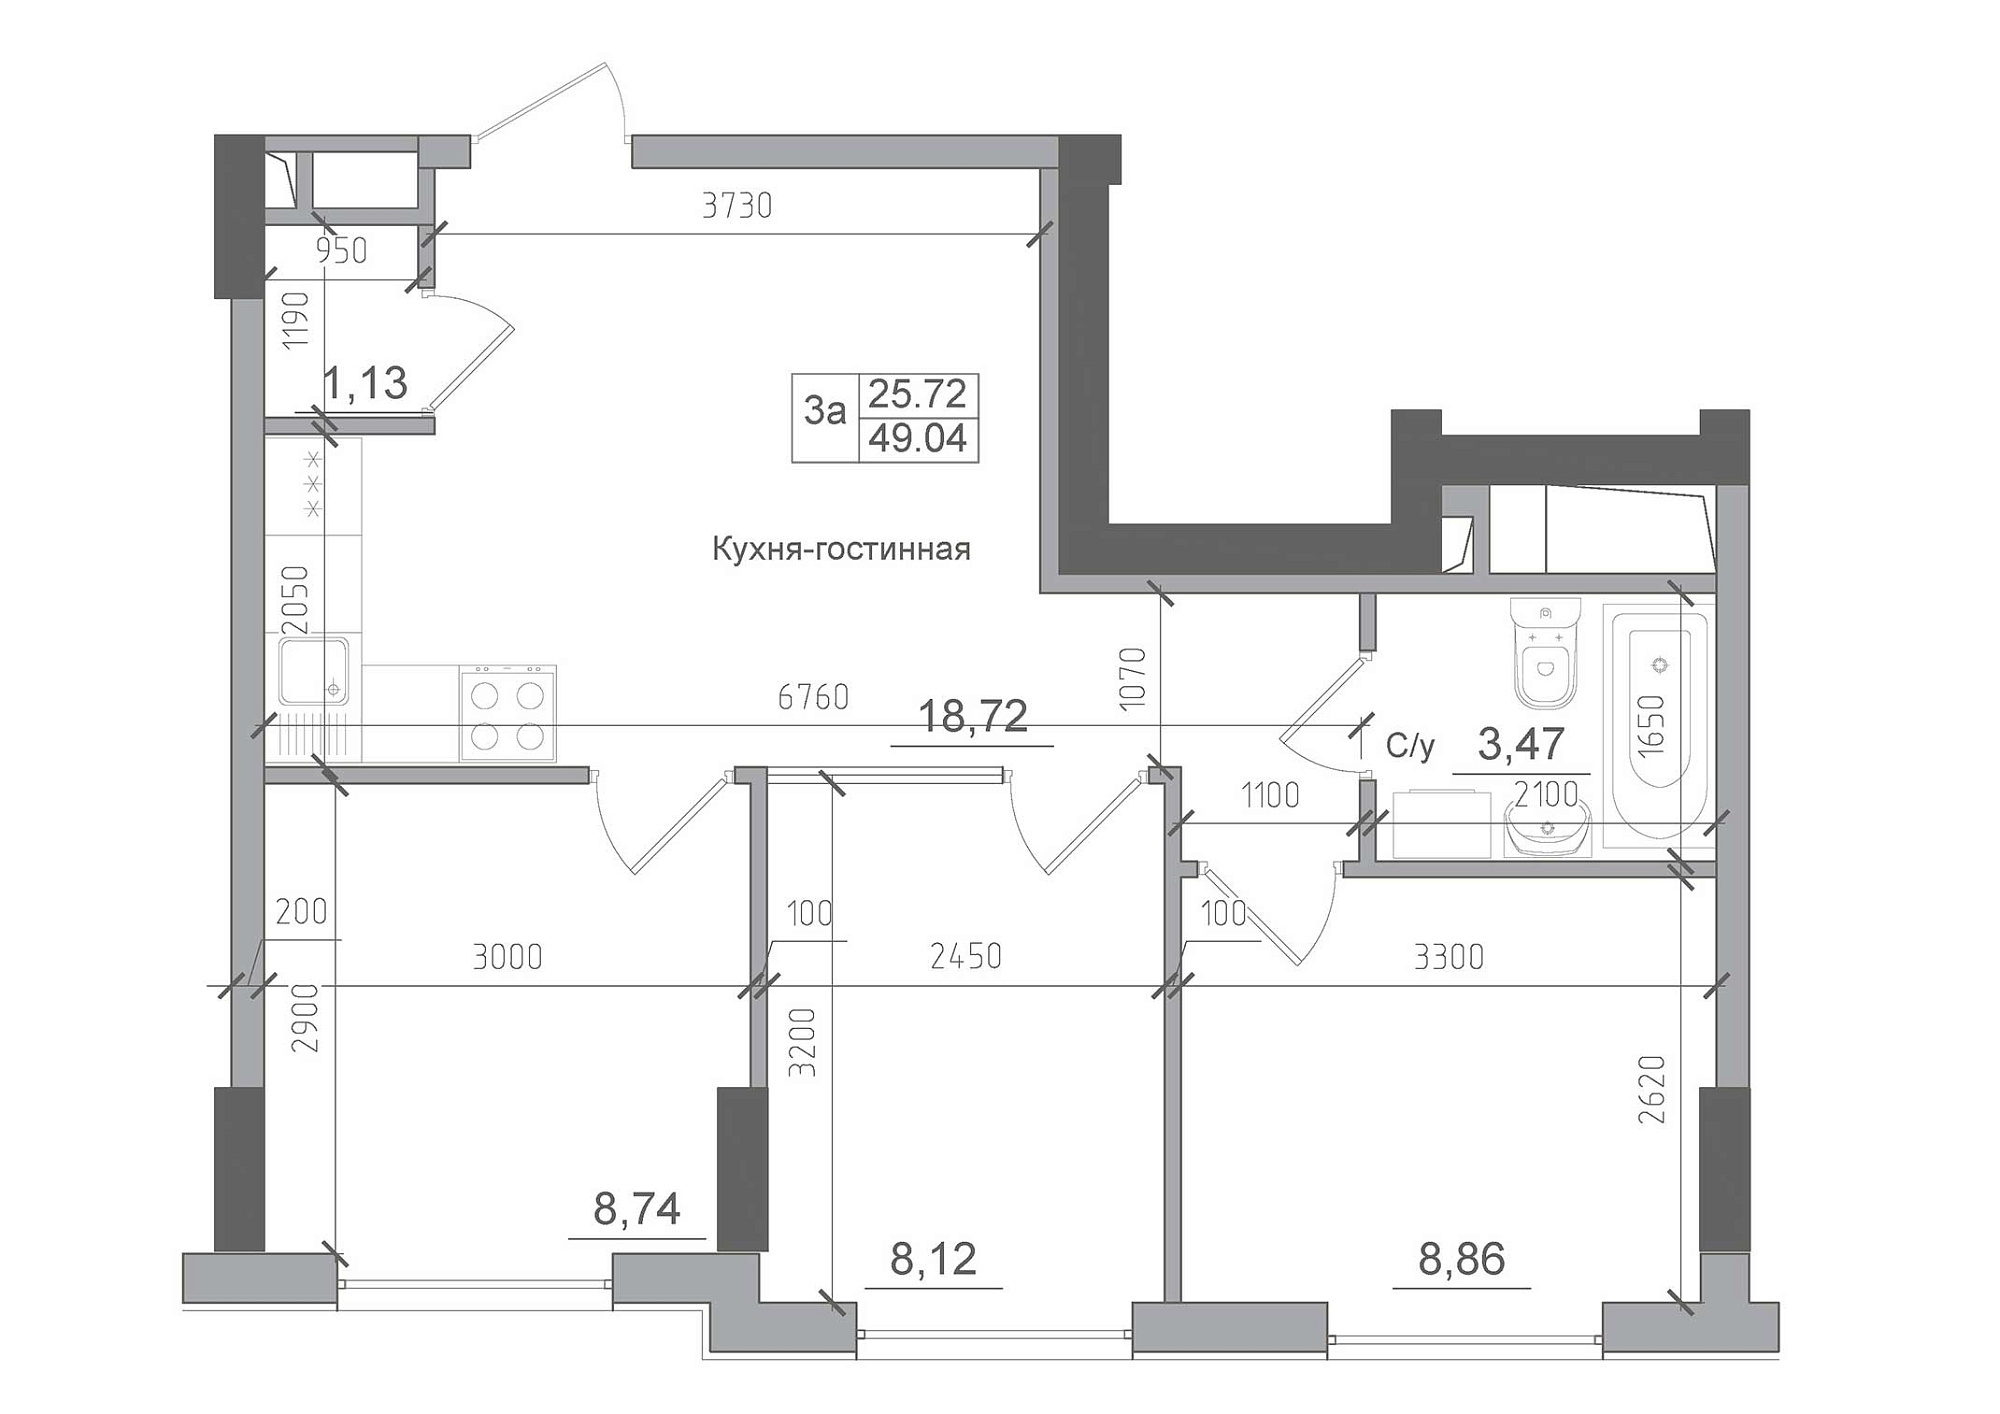 Планування 3-к квартира площею 49.04м2, AB-22-08/00007.